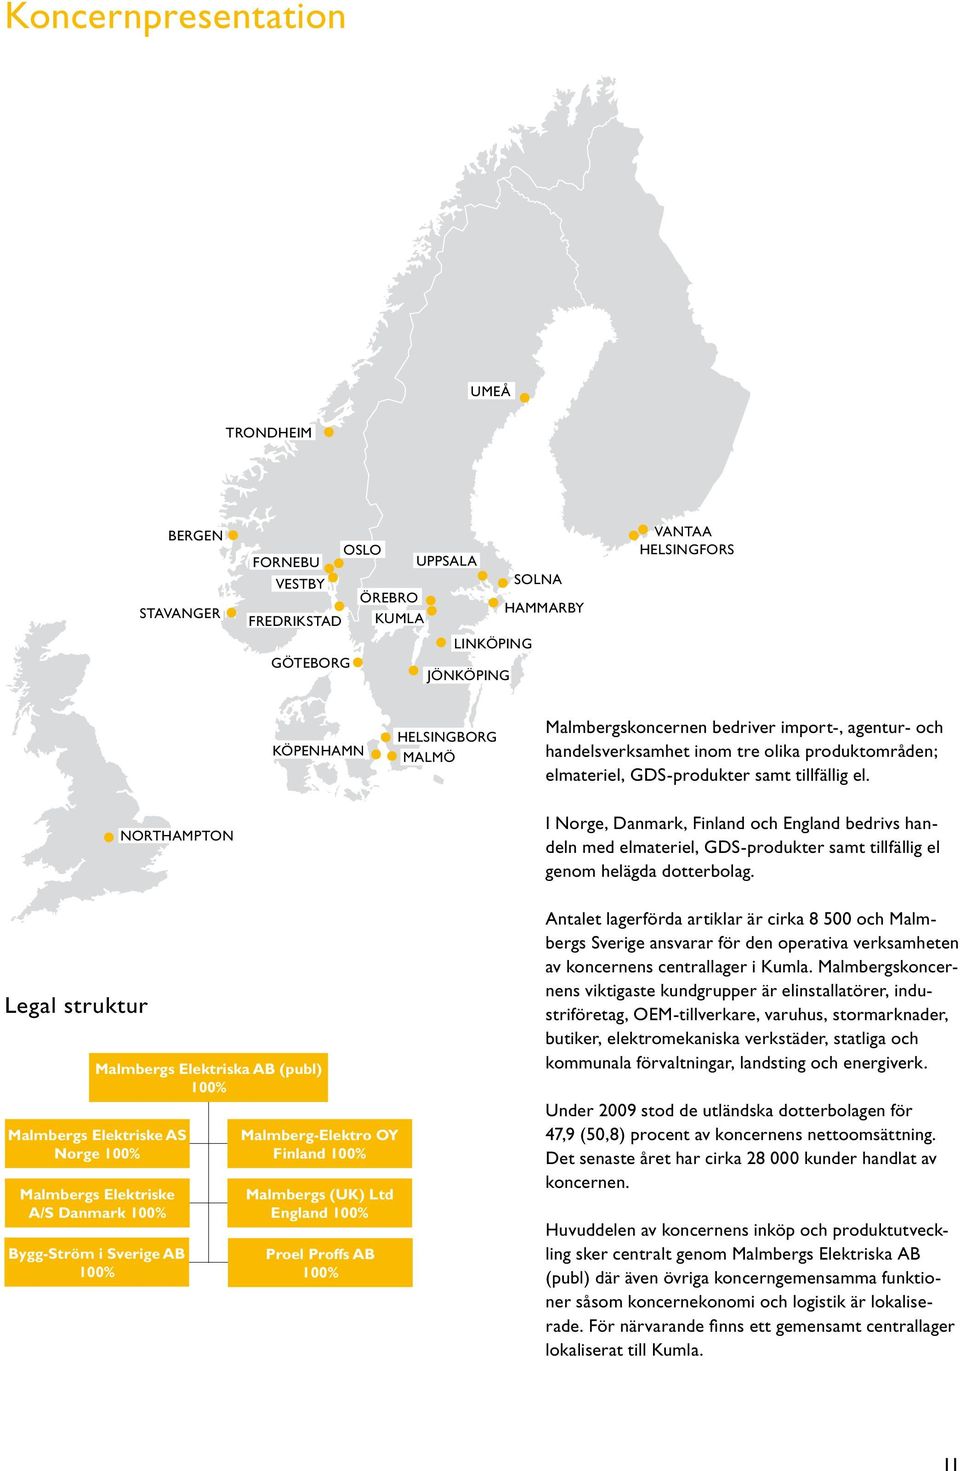 NORTHAMPTON I Norge, Danmark, Finland och England bedrivs handeln med elmateriel, GDS-produkter samt tillfällig el genom helägda dotterbolag.